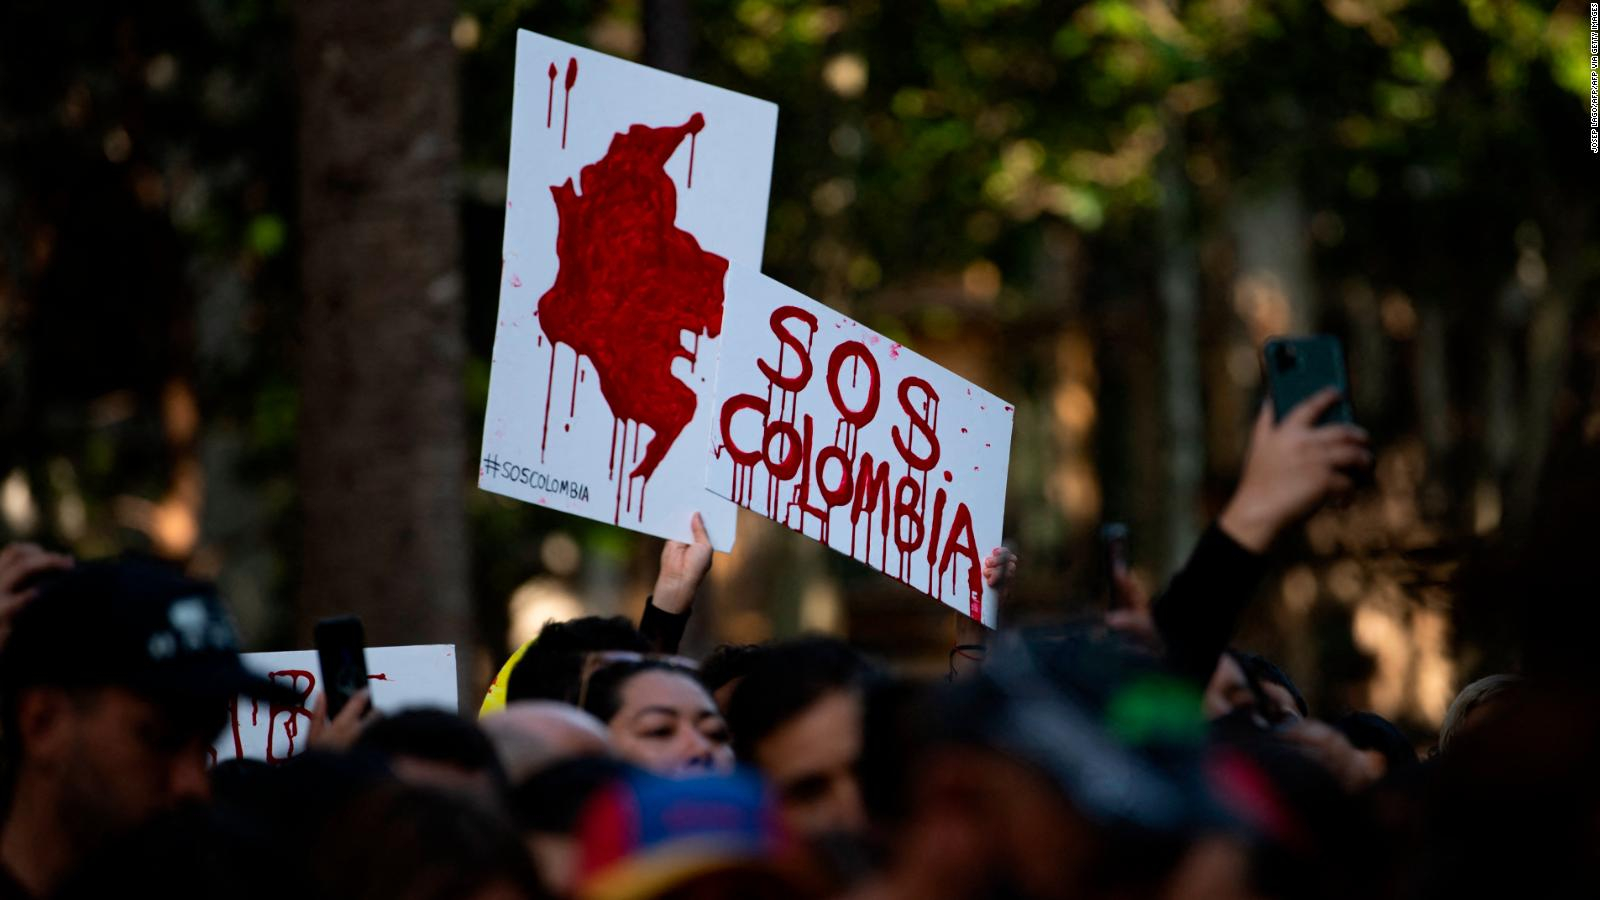 Falleció un manifestante en Colombia luego de ser atacado por supuestos civiles armados